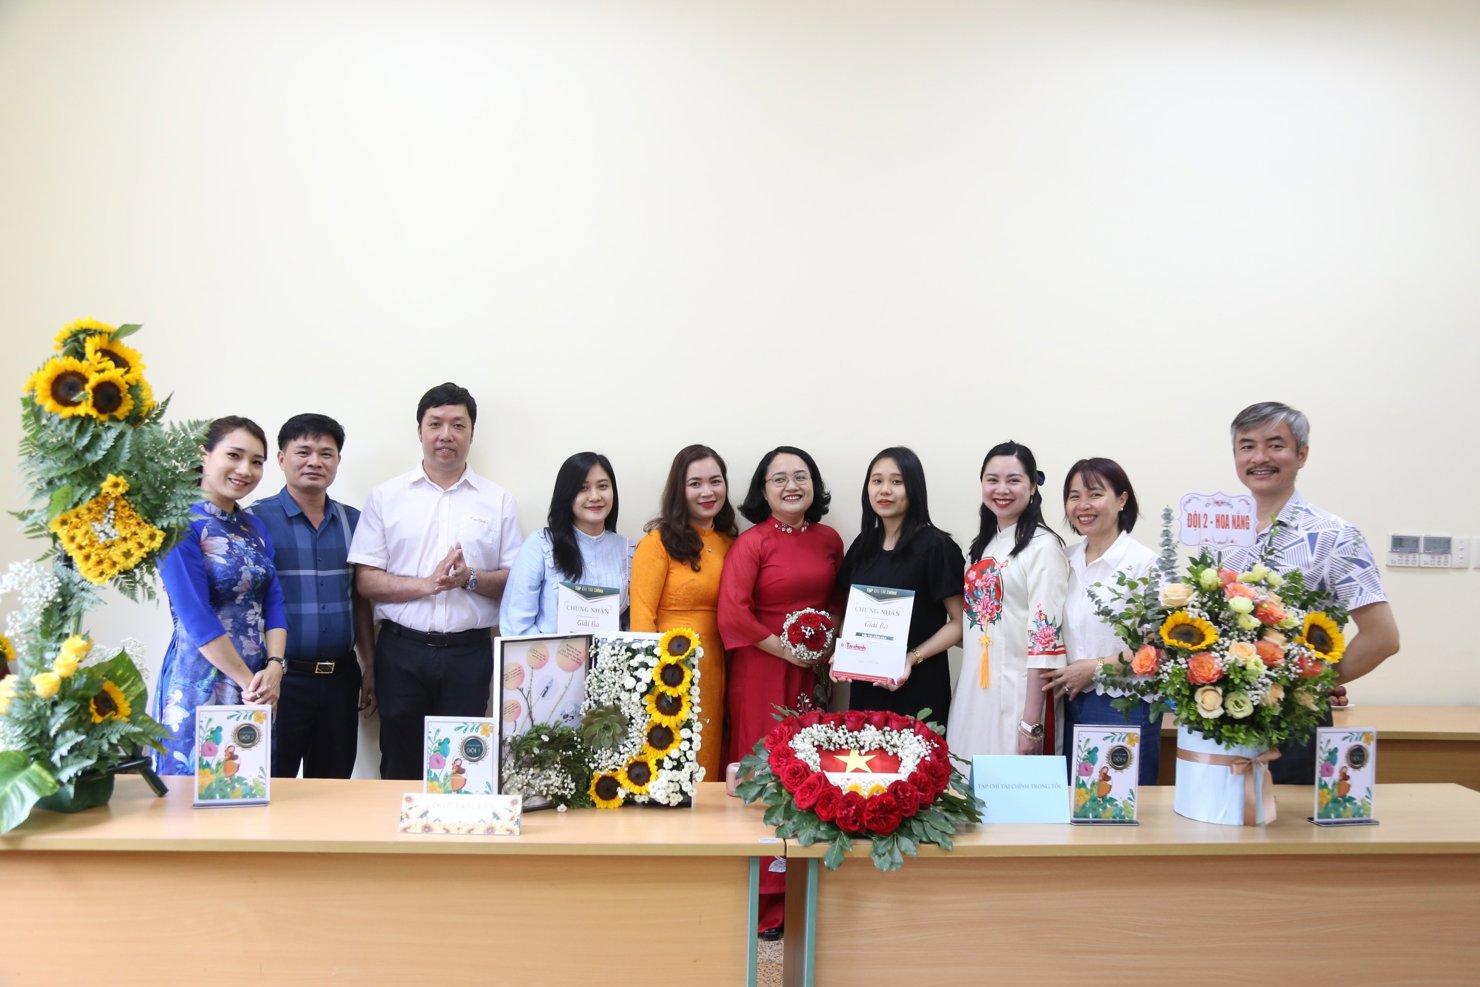 Tổ chức "Hội thi cắm hoa nghệ thuật" chào mừng kỷ niệm 98 năm Ngày Báo chí Cách mạng Việt Nam - Ảnh 1